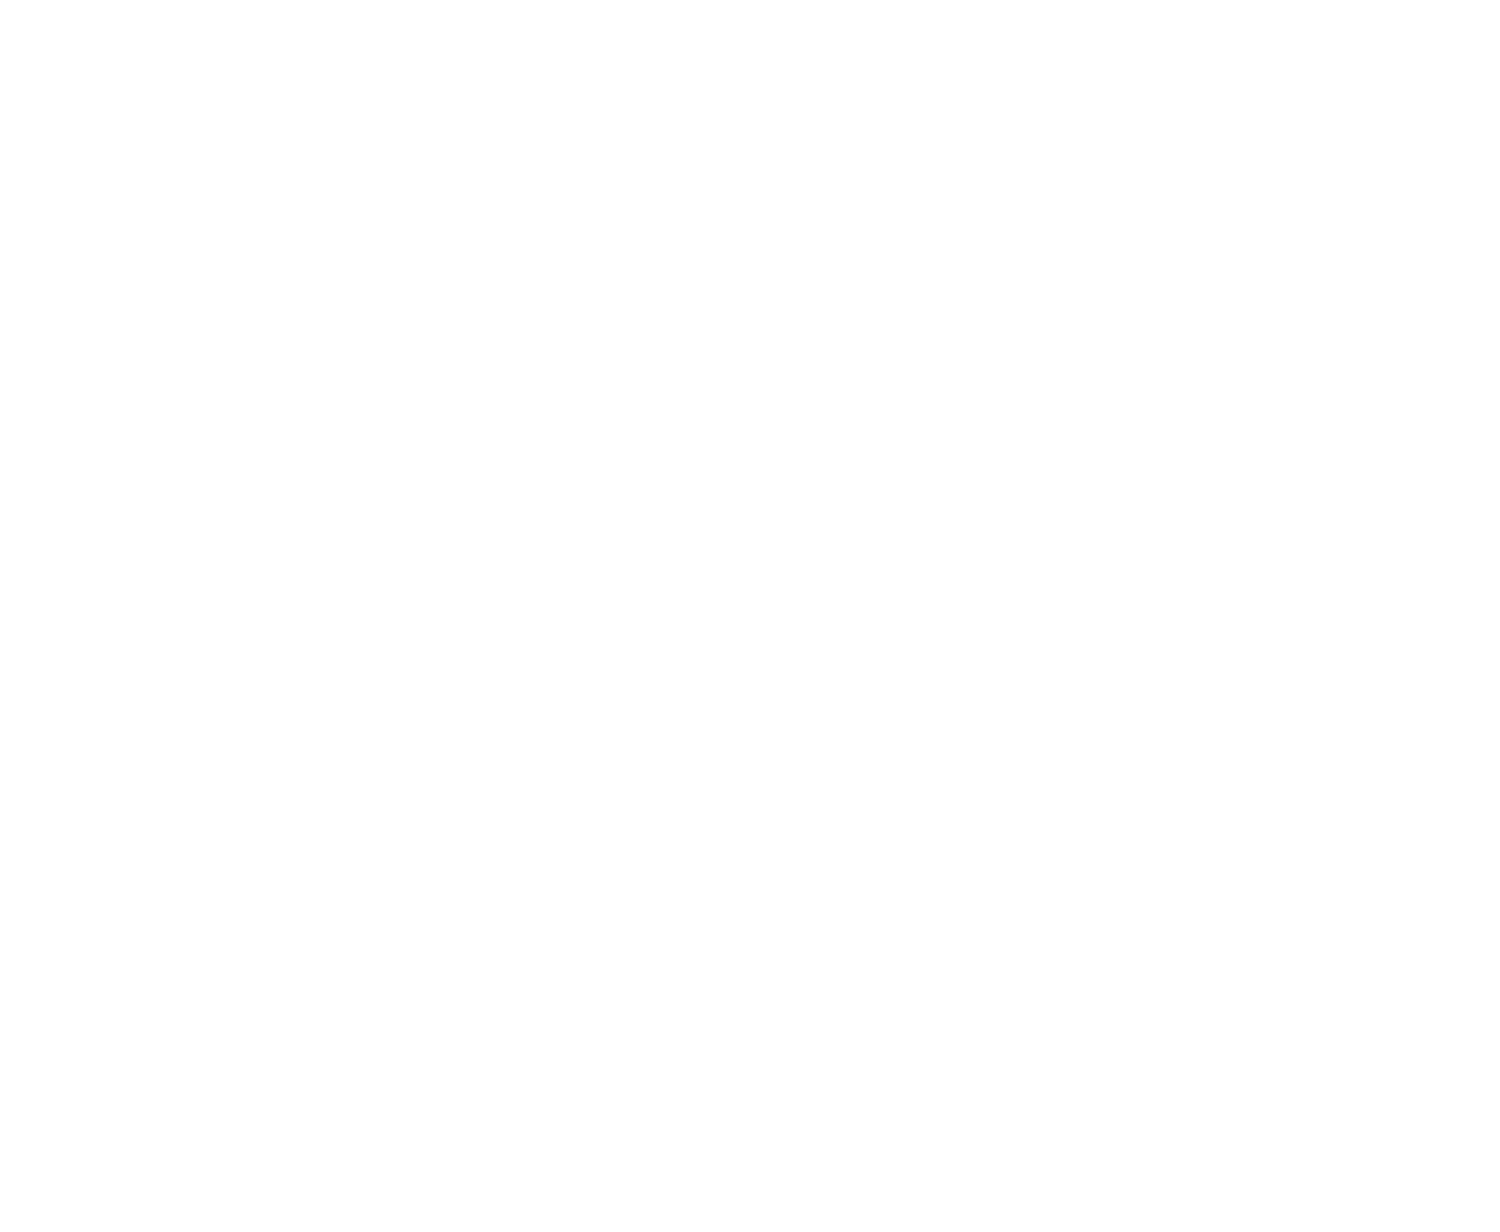 Genesis Interior Design